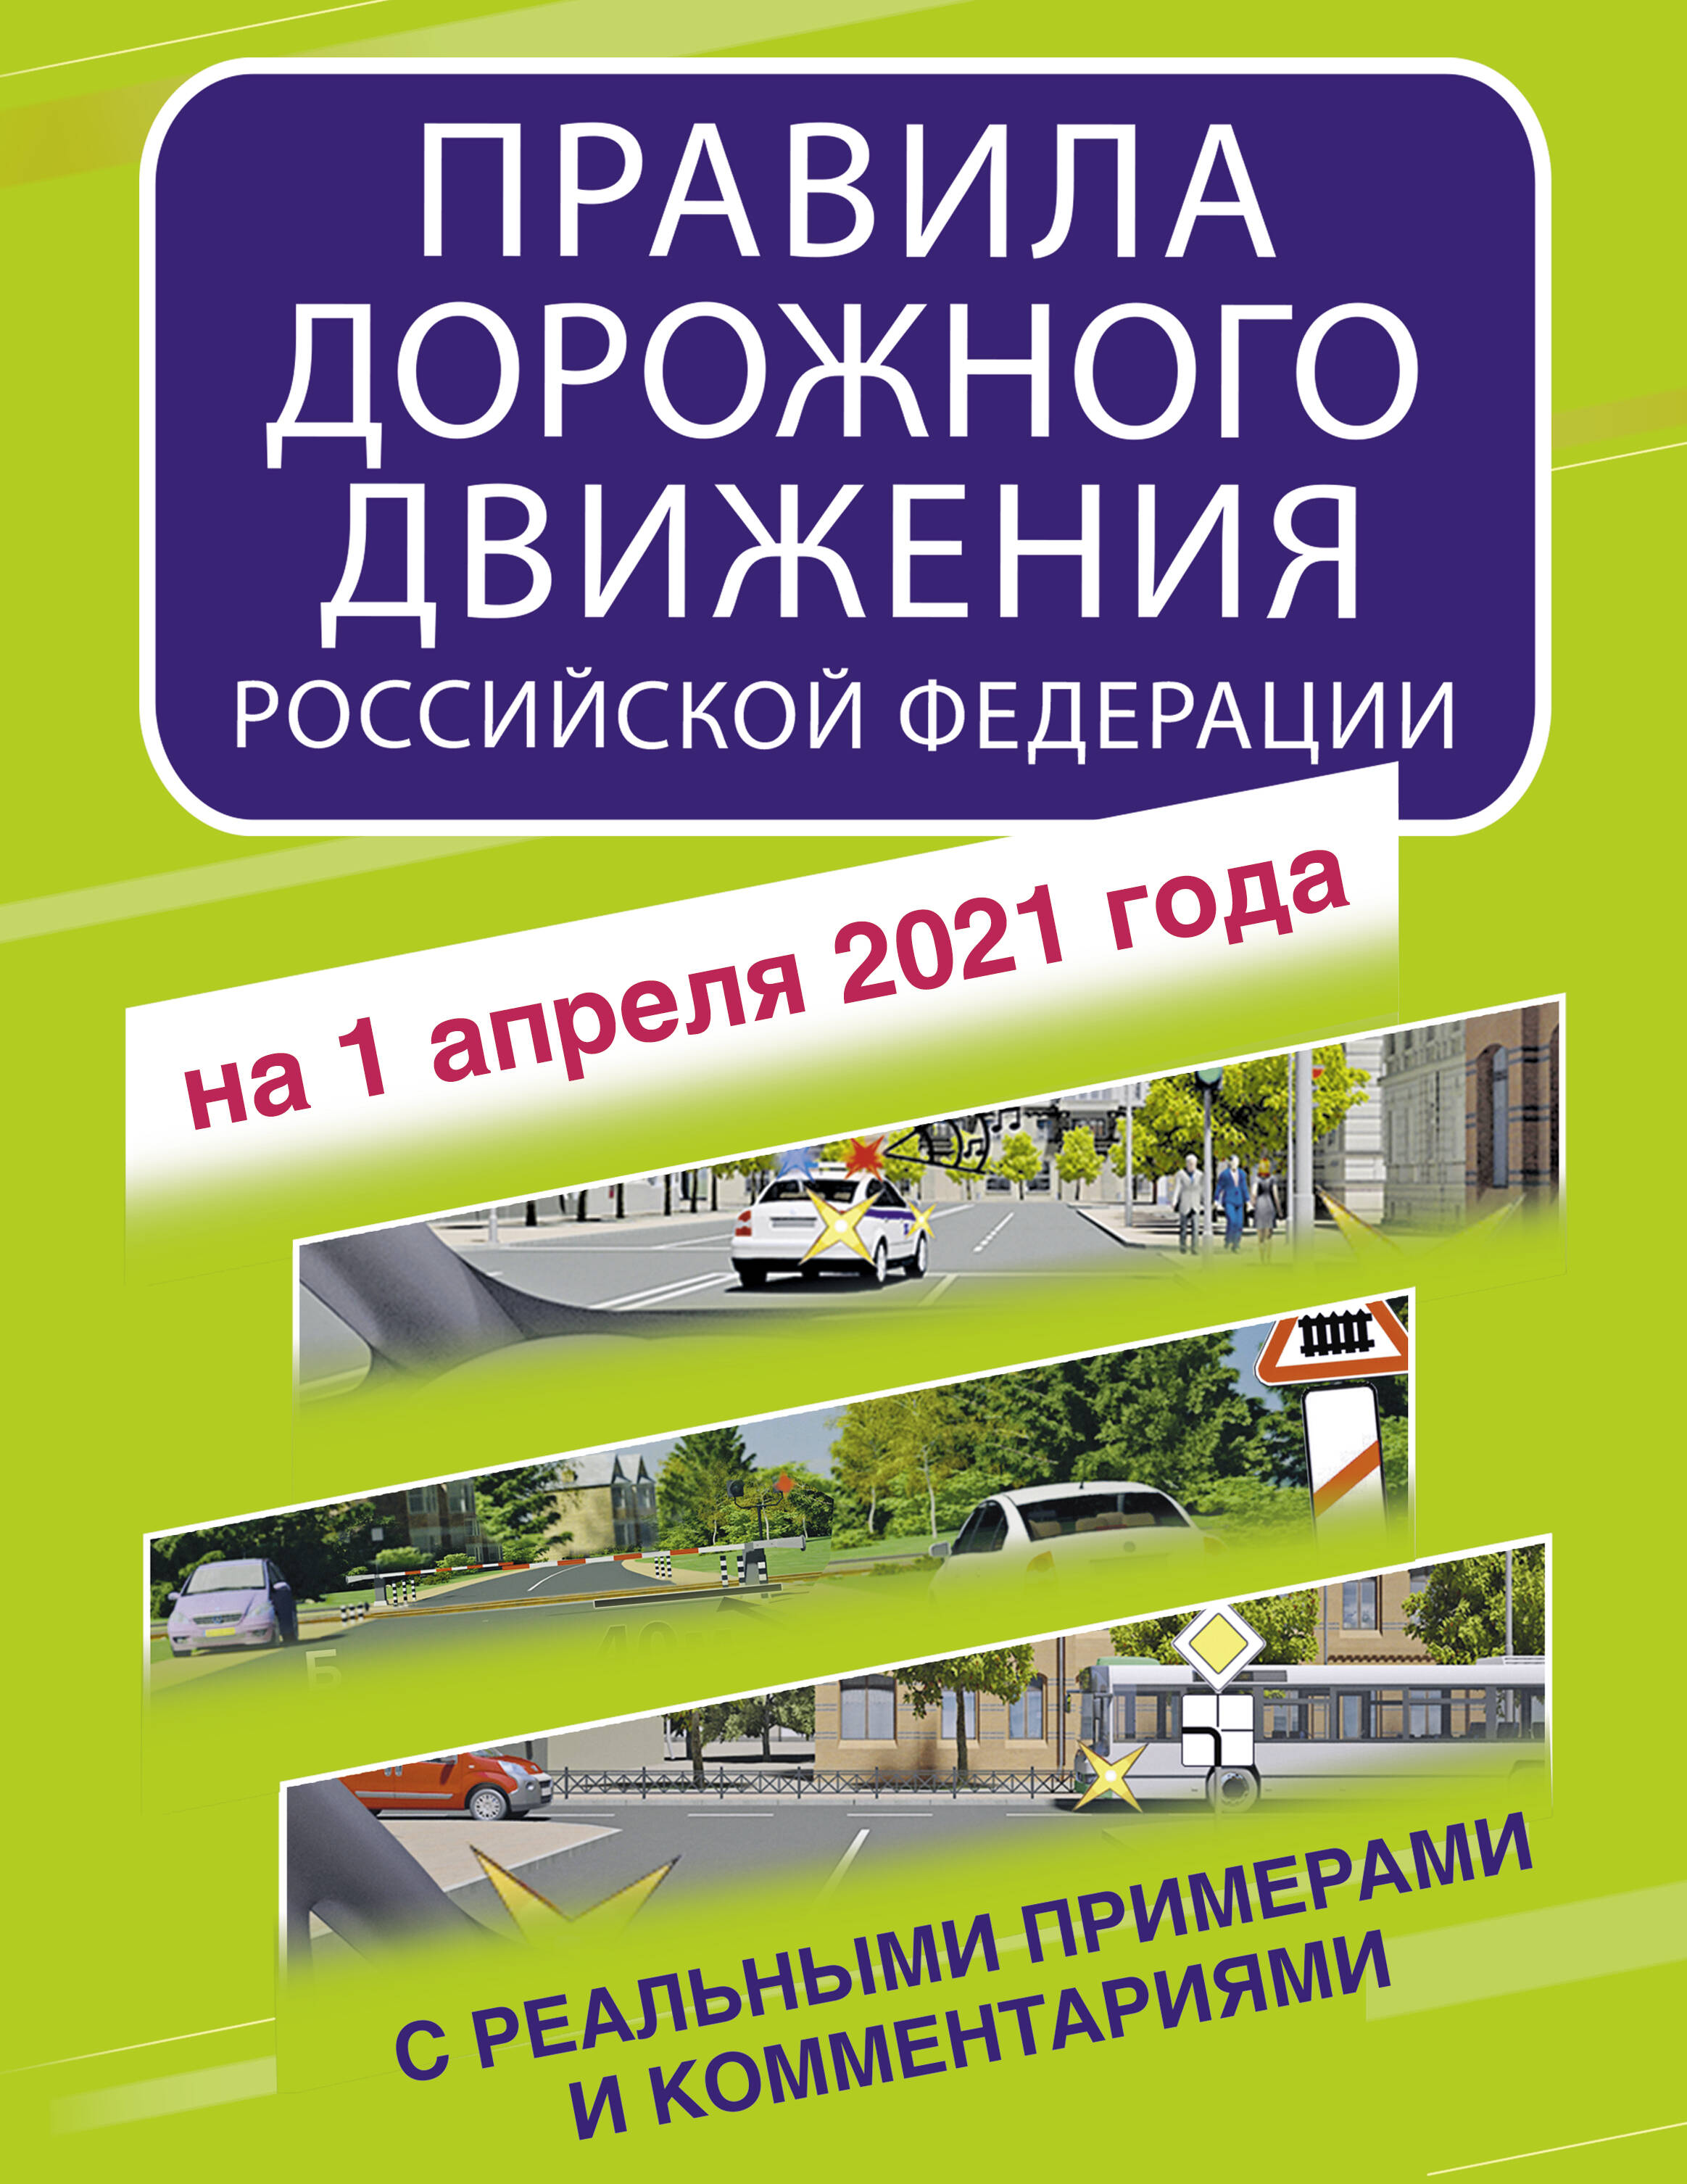  Правила дорожного движения Российской Федерации с реальными примерами и комментариями на 1 апреля 2021 года - страница 0